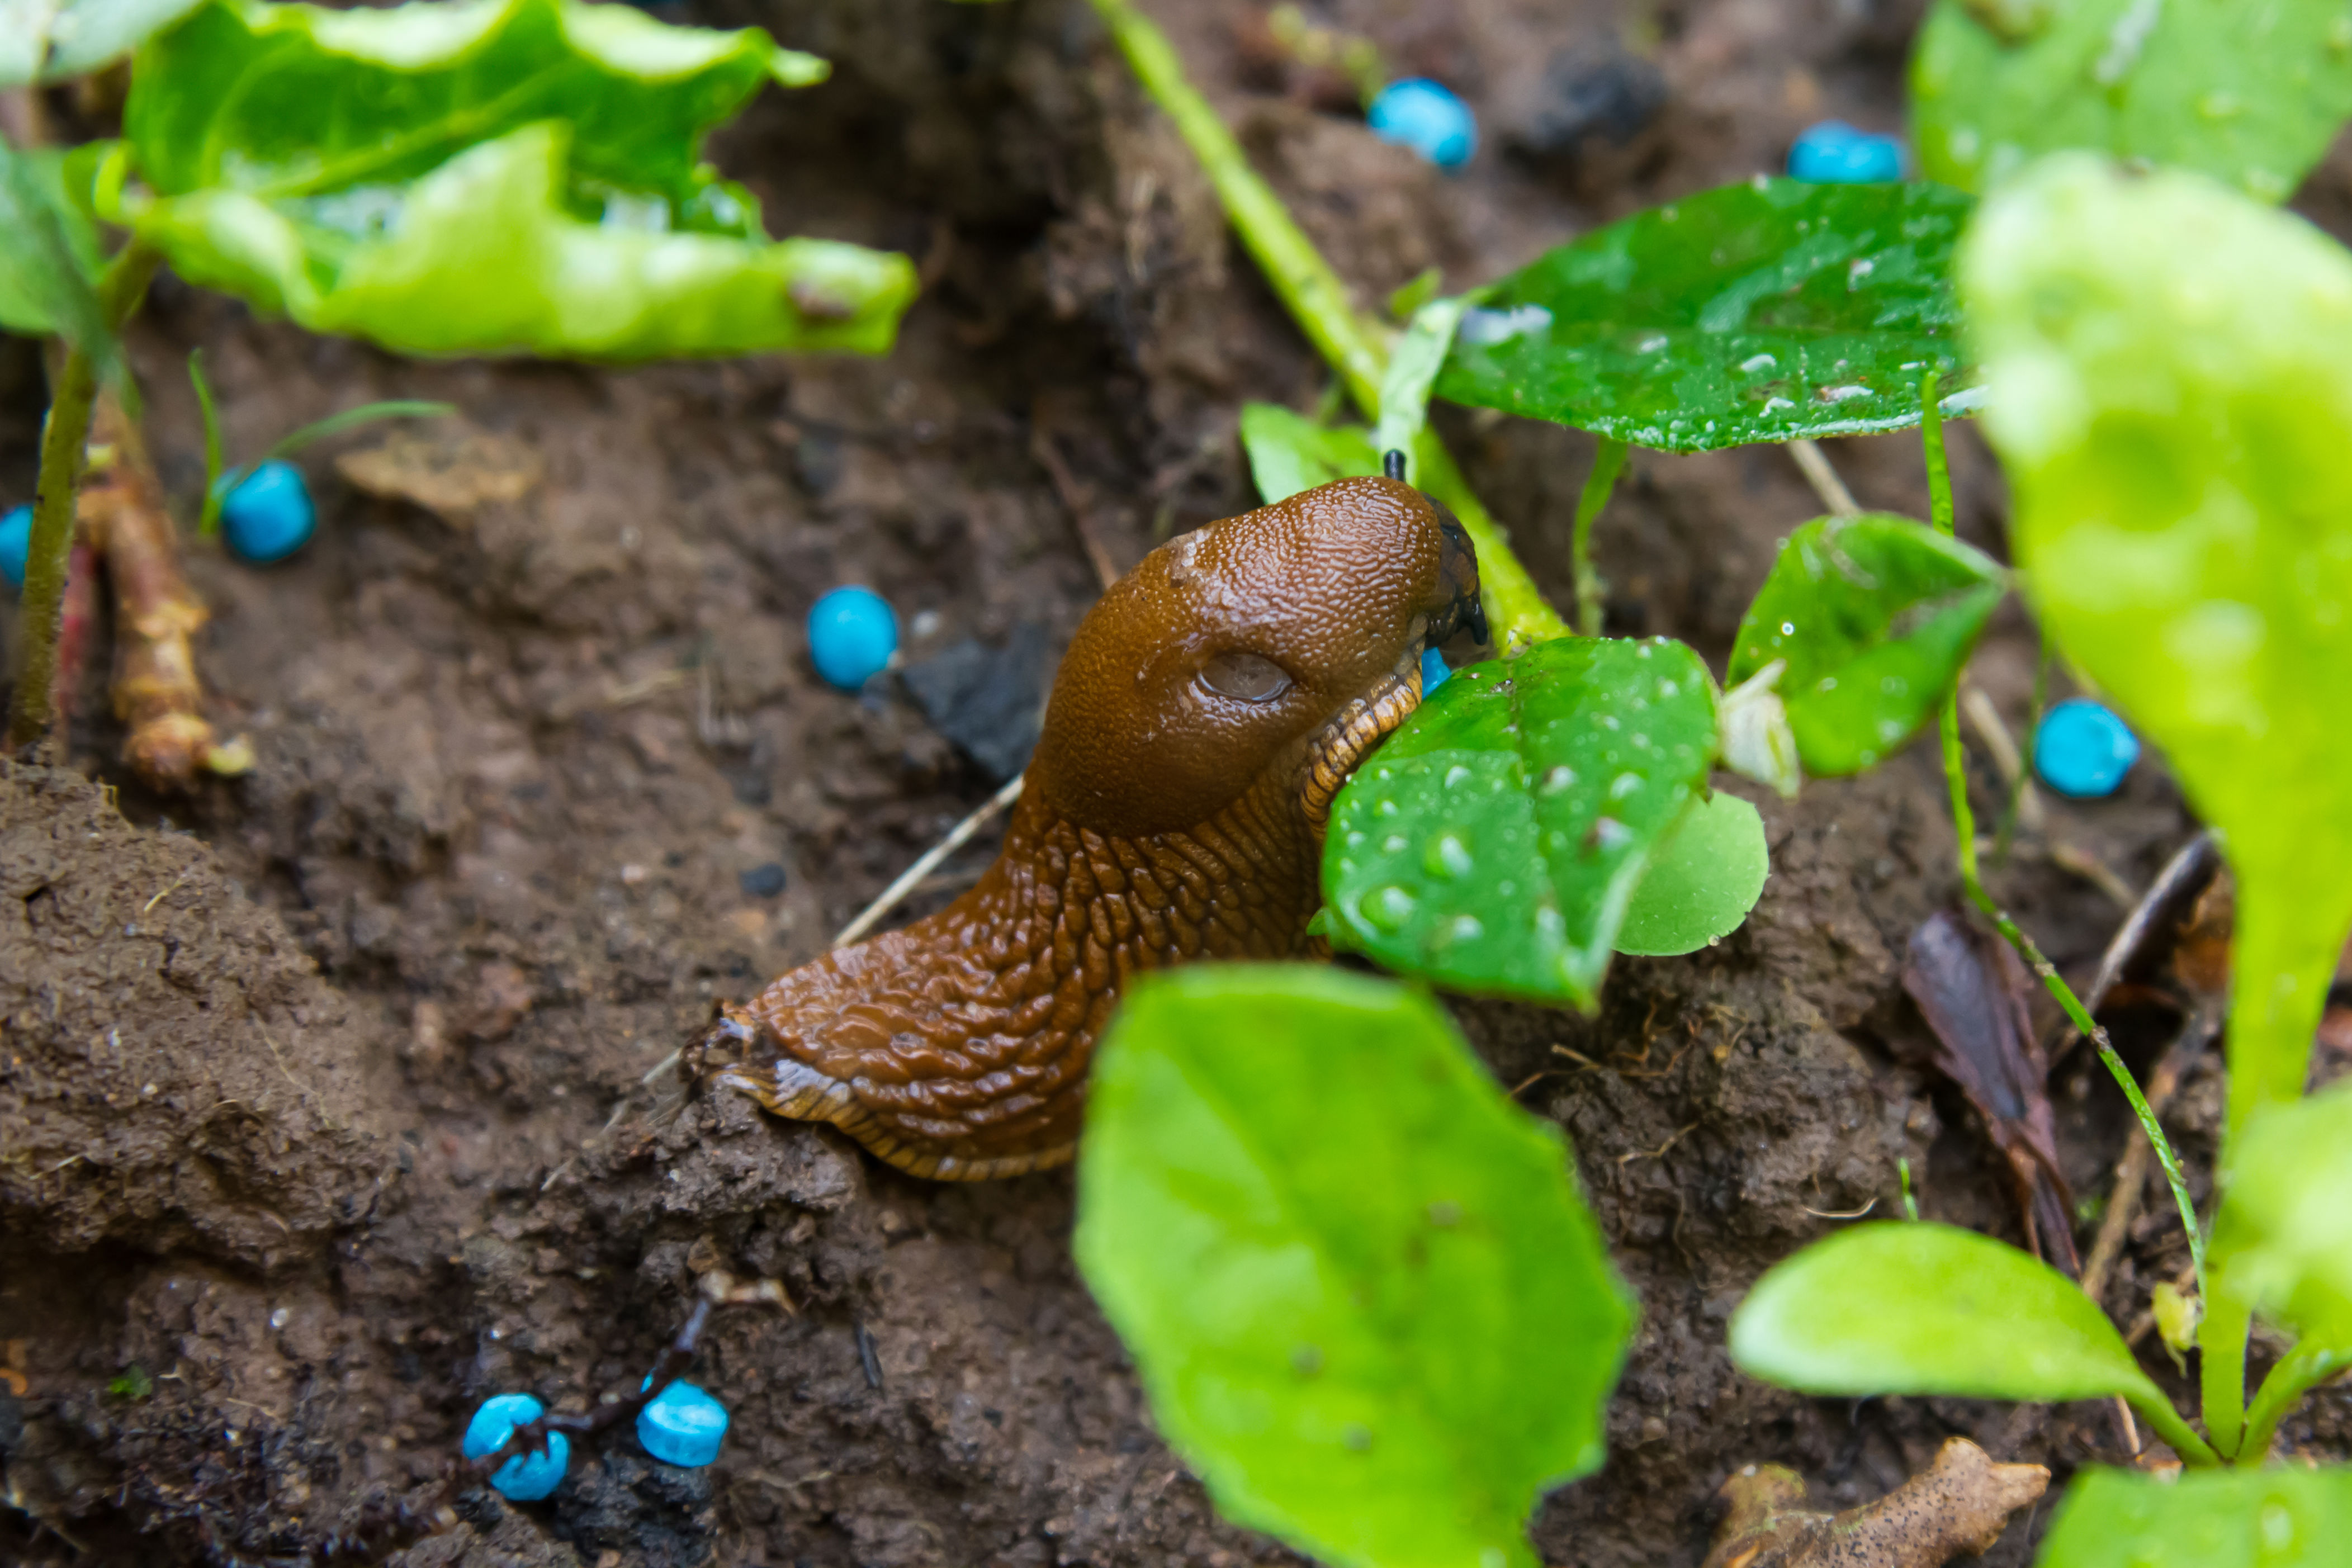 wyjmij z lodówki i postaw w ogródku. inwazja ślimaków skończy się szybciej, niż policzysz do 3